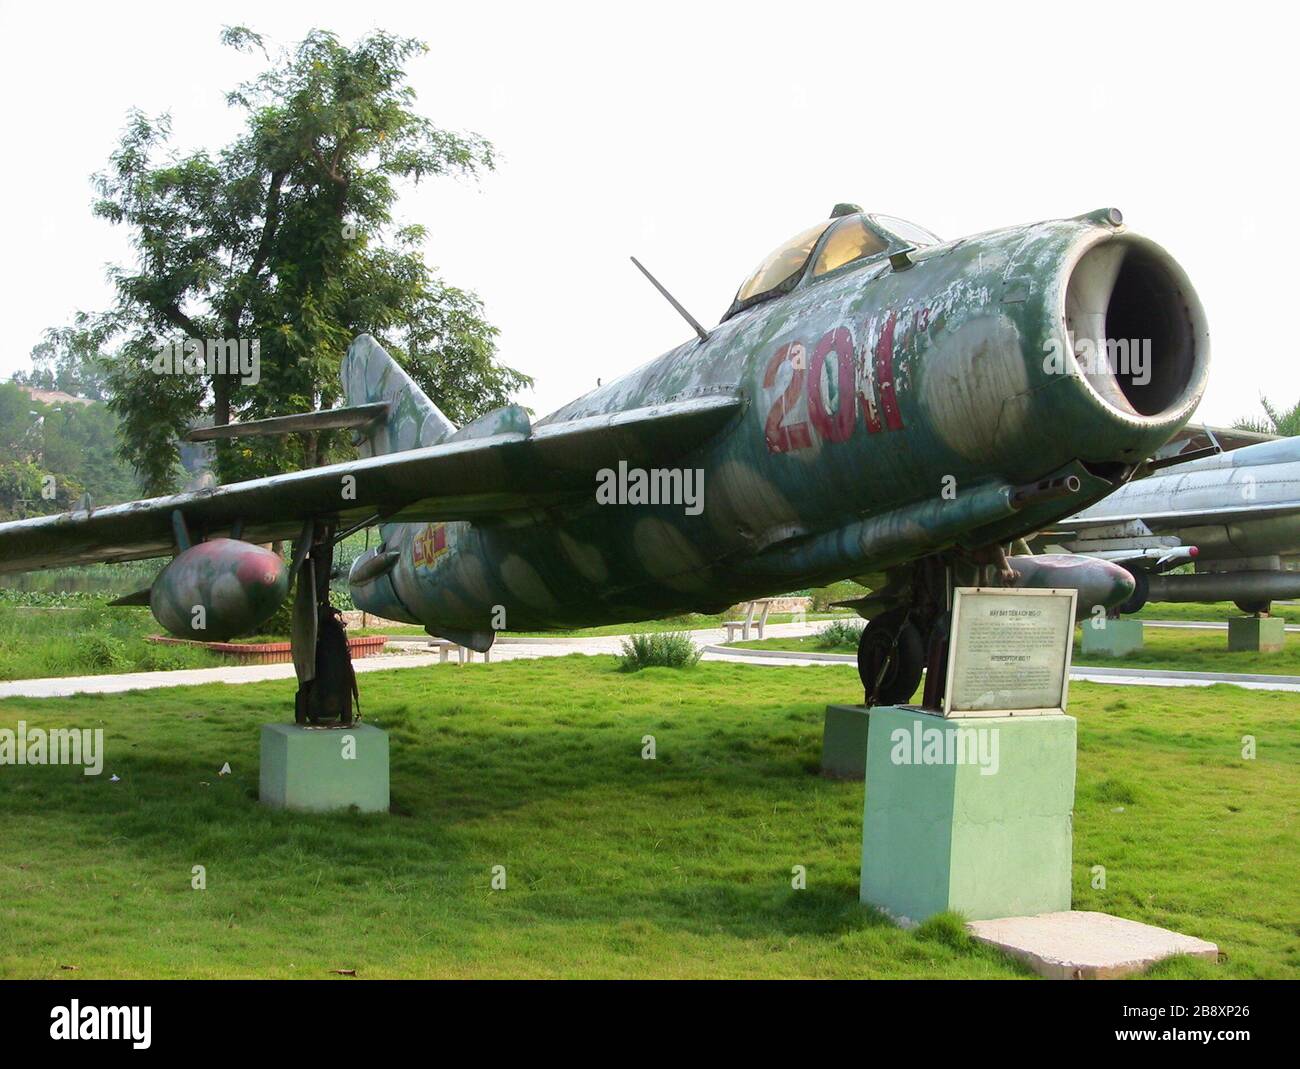 Thiết kế cổ điển và đầy bản lĩnh của MiG-17 chắc chắn sẽ làm say đắm những tín đồ máy bay trên toàn thế giới. Hãy xem hình ảnh để thấy sự đẹp đẽ của chiếc máy bay này.